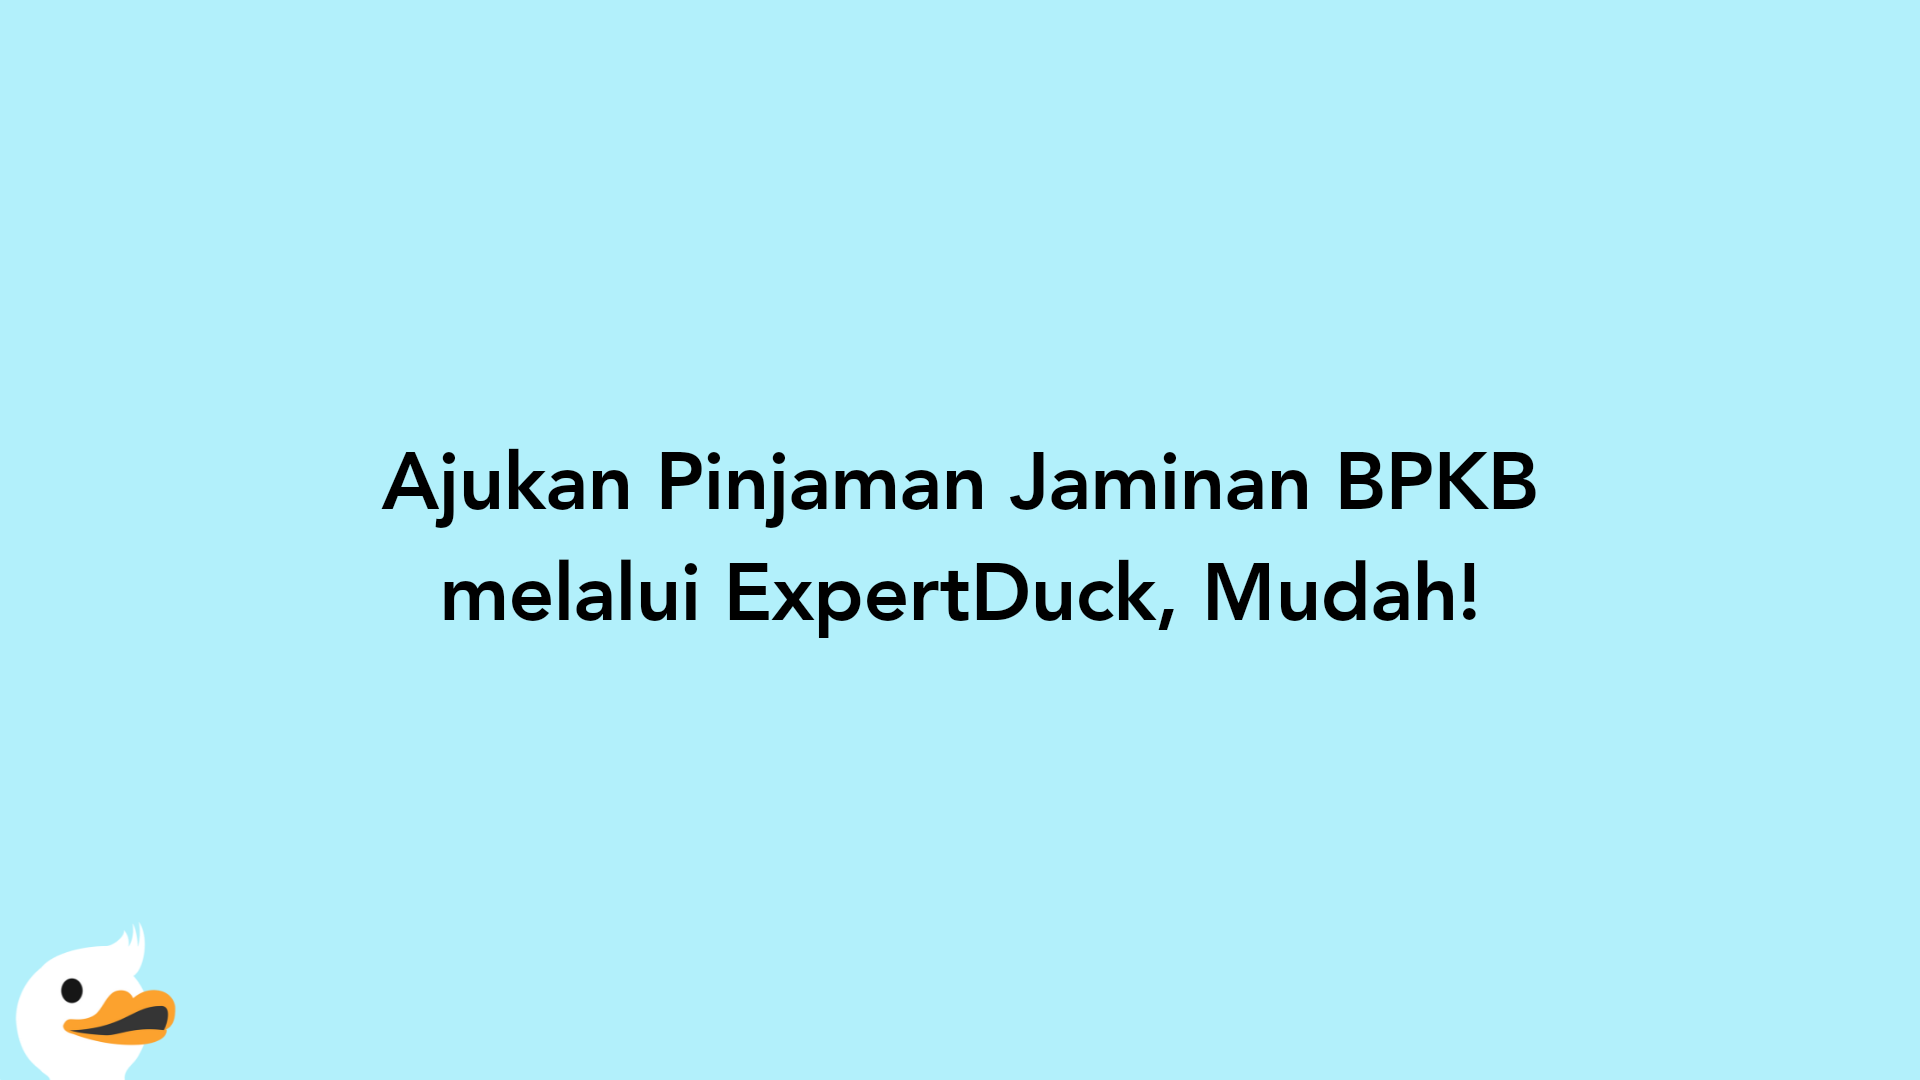 Ajukan Pinjaman Jaminan BPKB melalui ExpertDuck, Mudah!